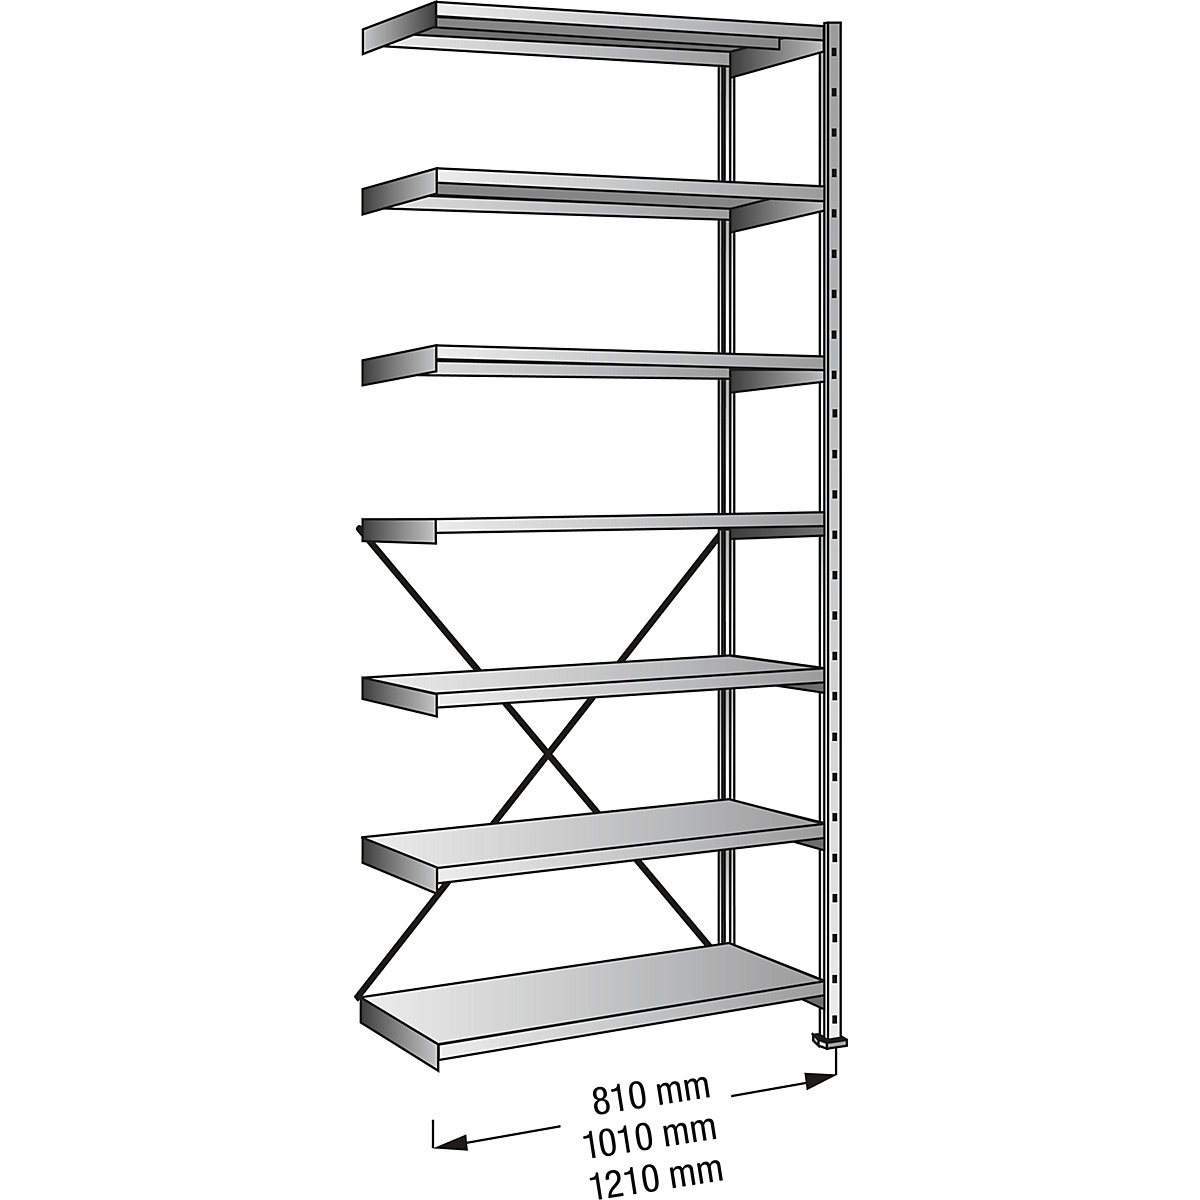 Boltless shelving unit, zinc plated, 7 shelves, height 2640 mm, shelf width 800 mm, depth 500 mm, extension shelf unit